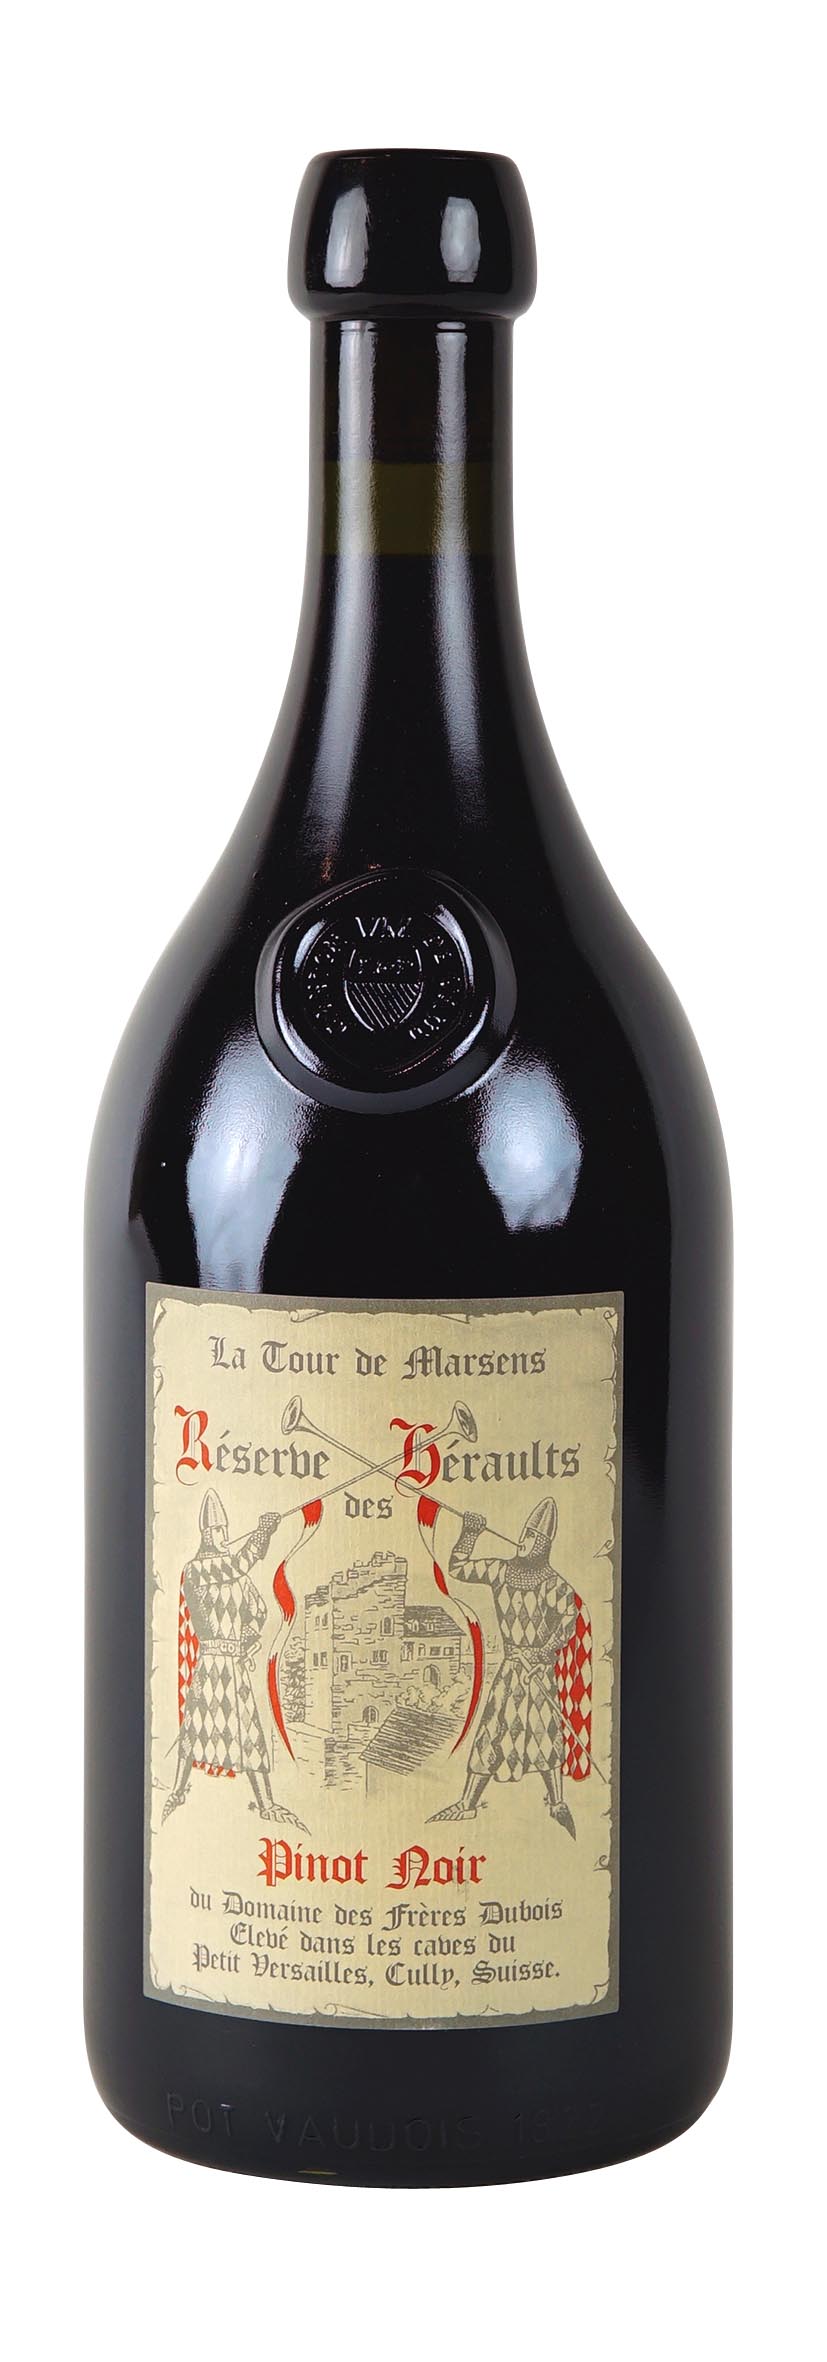 Lavaux AOC Pinot Noir Réserve Des Héraults 2015